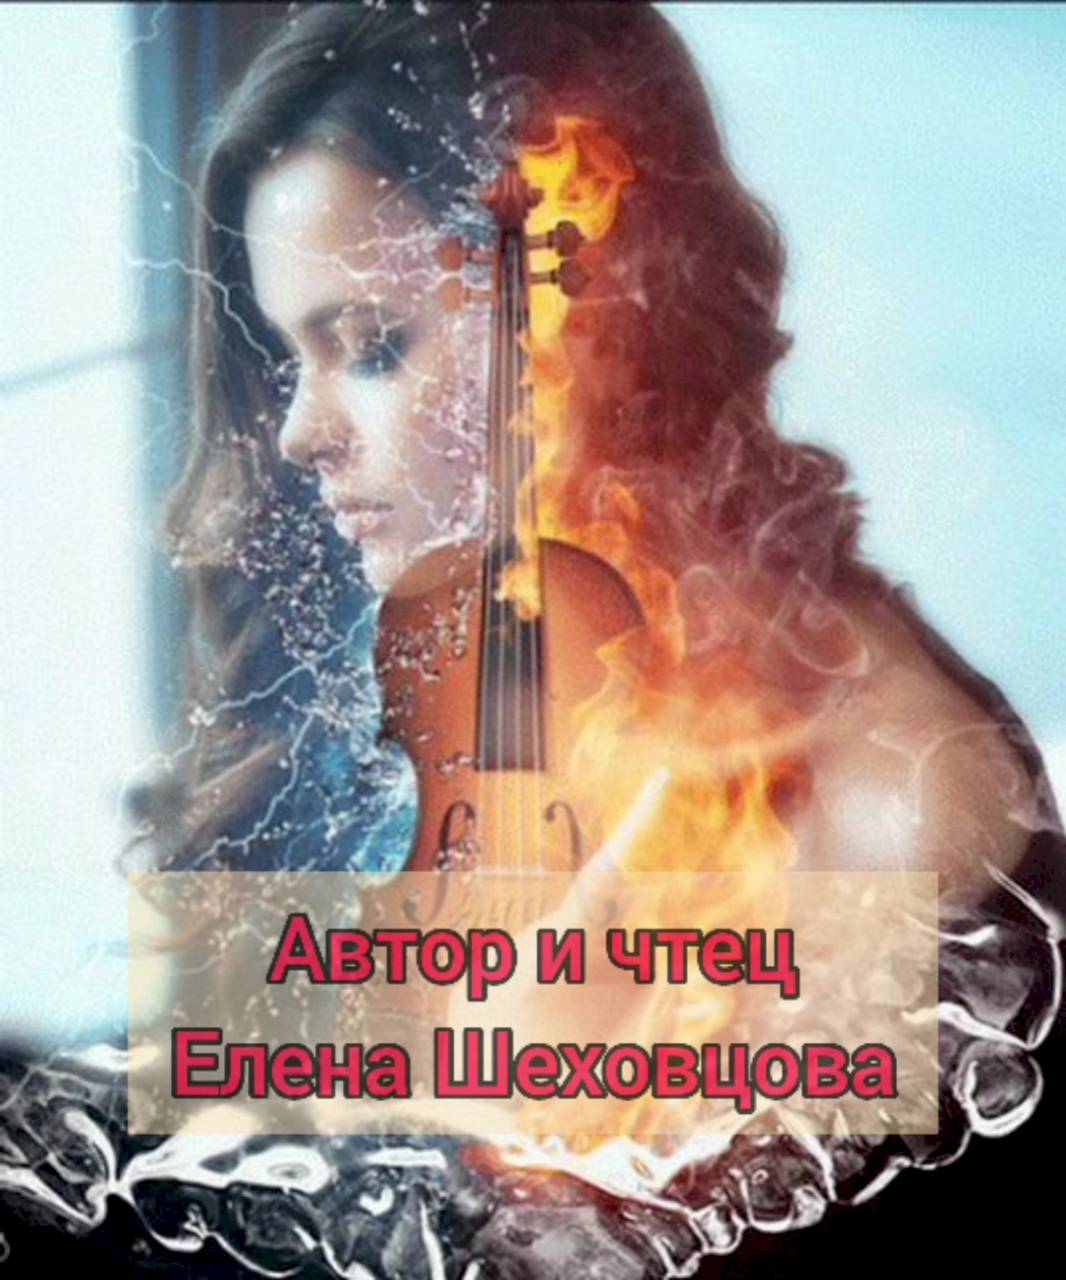 Музыка это звук души. Женщина со скрипкой. Скрипка в огне. Струны человеческой души. Огненная скрипачка.